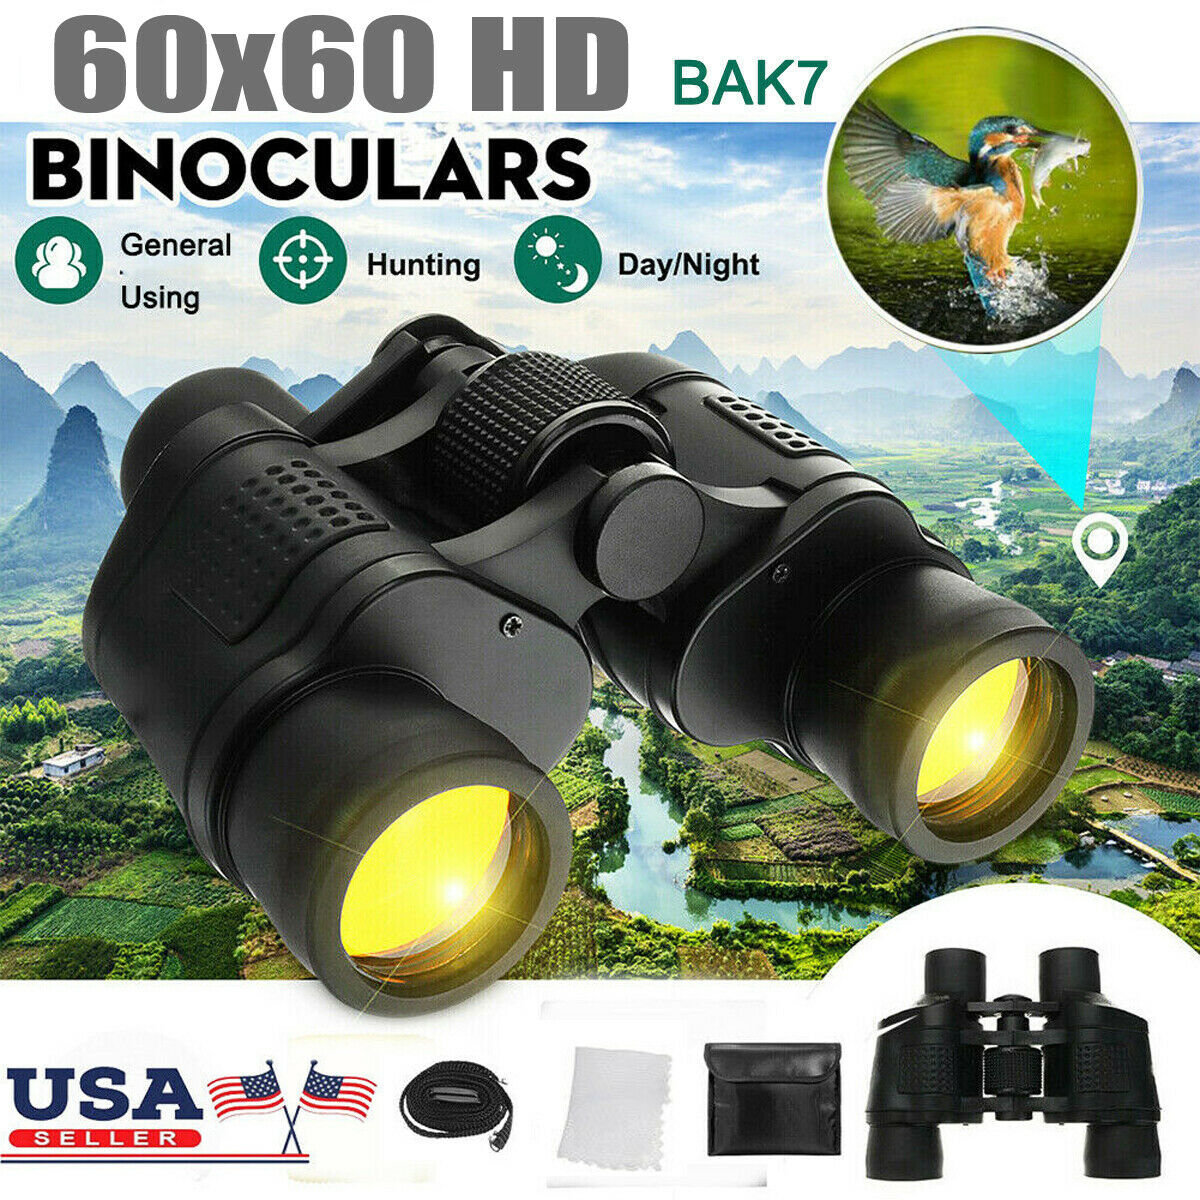 Binoculars 60x60 